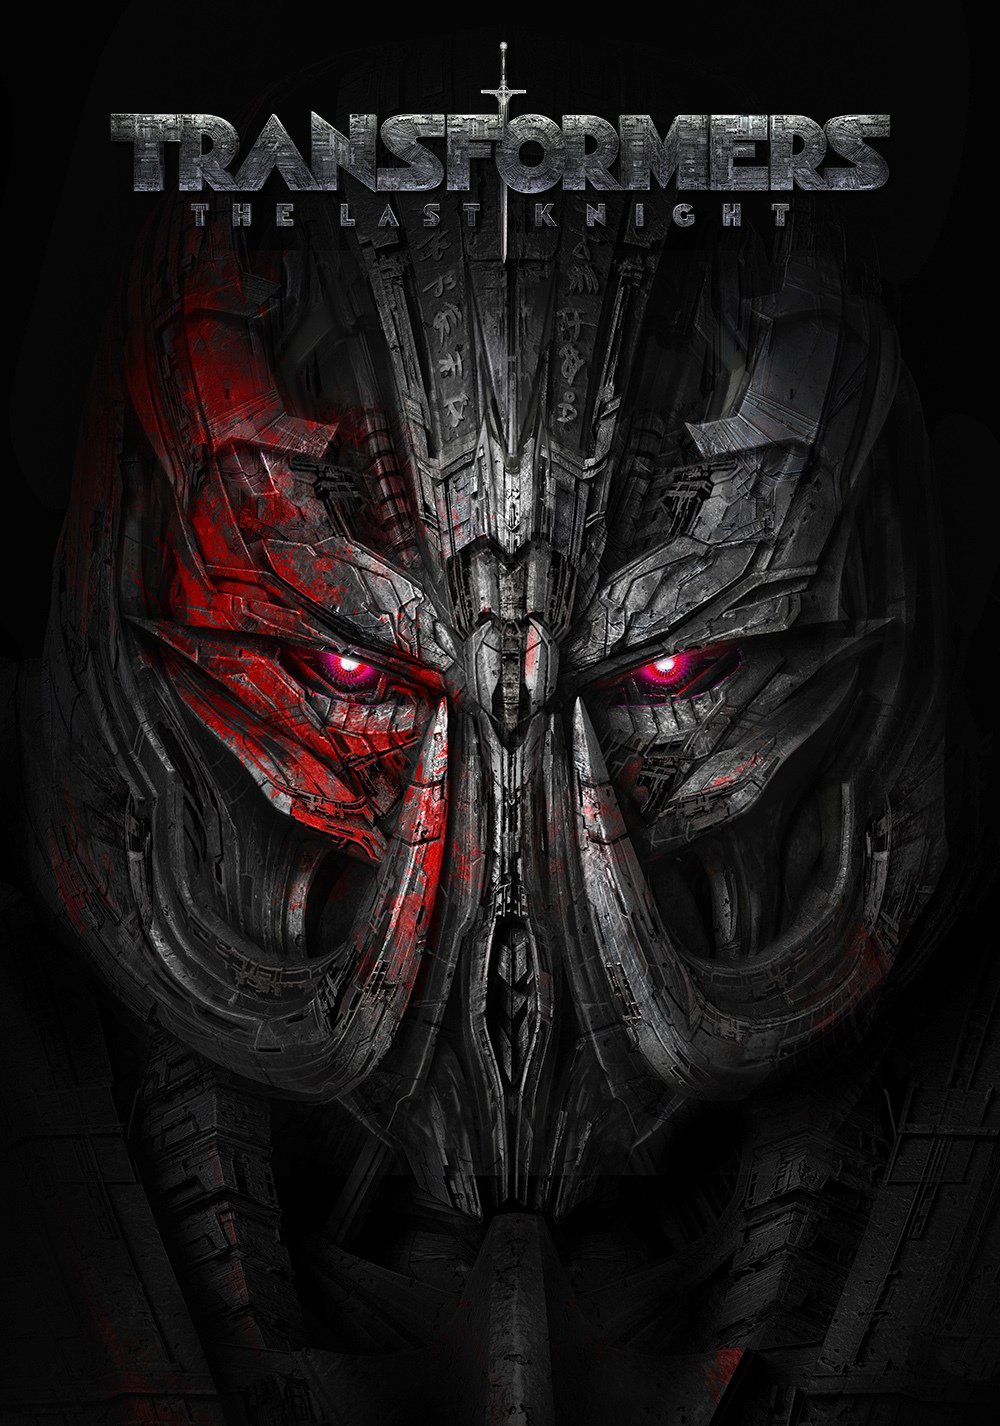 Poster de la película "Transformers: El último caballero"